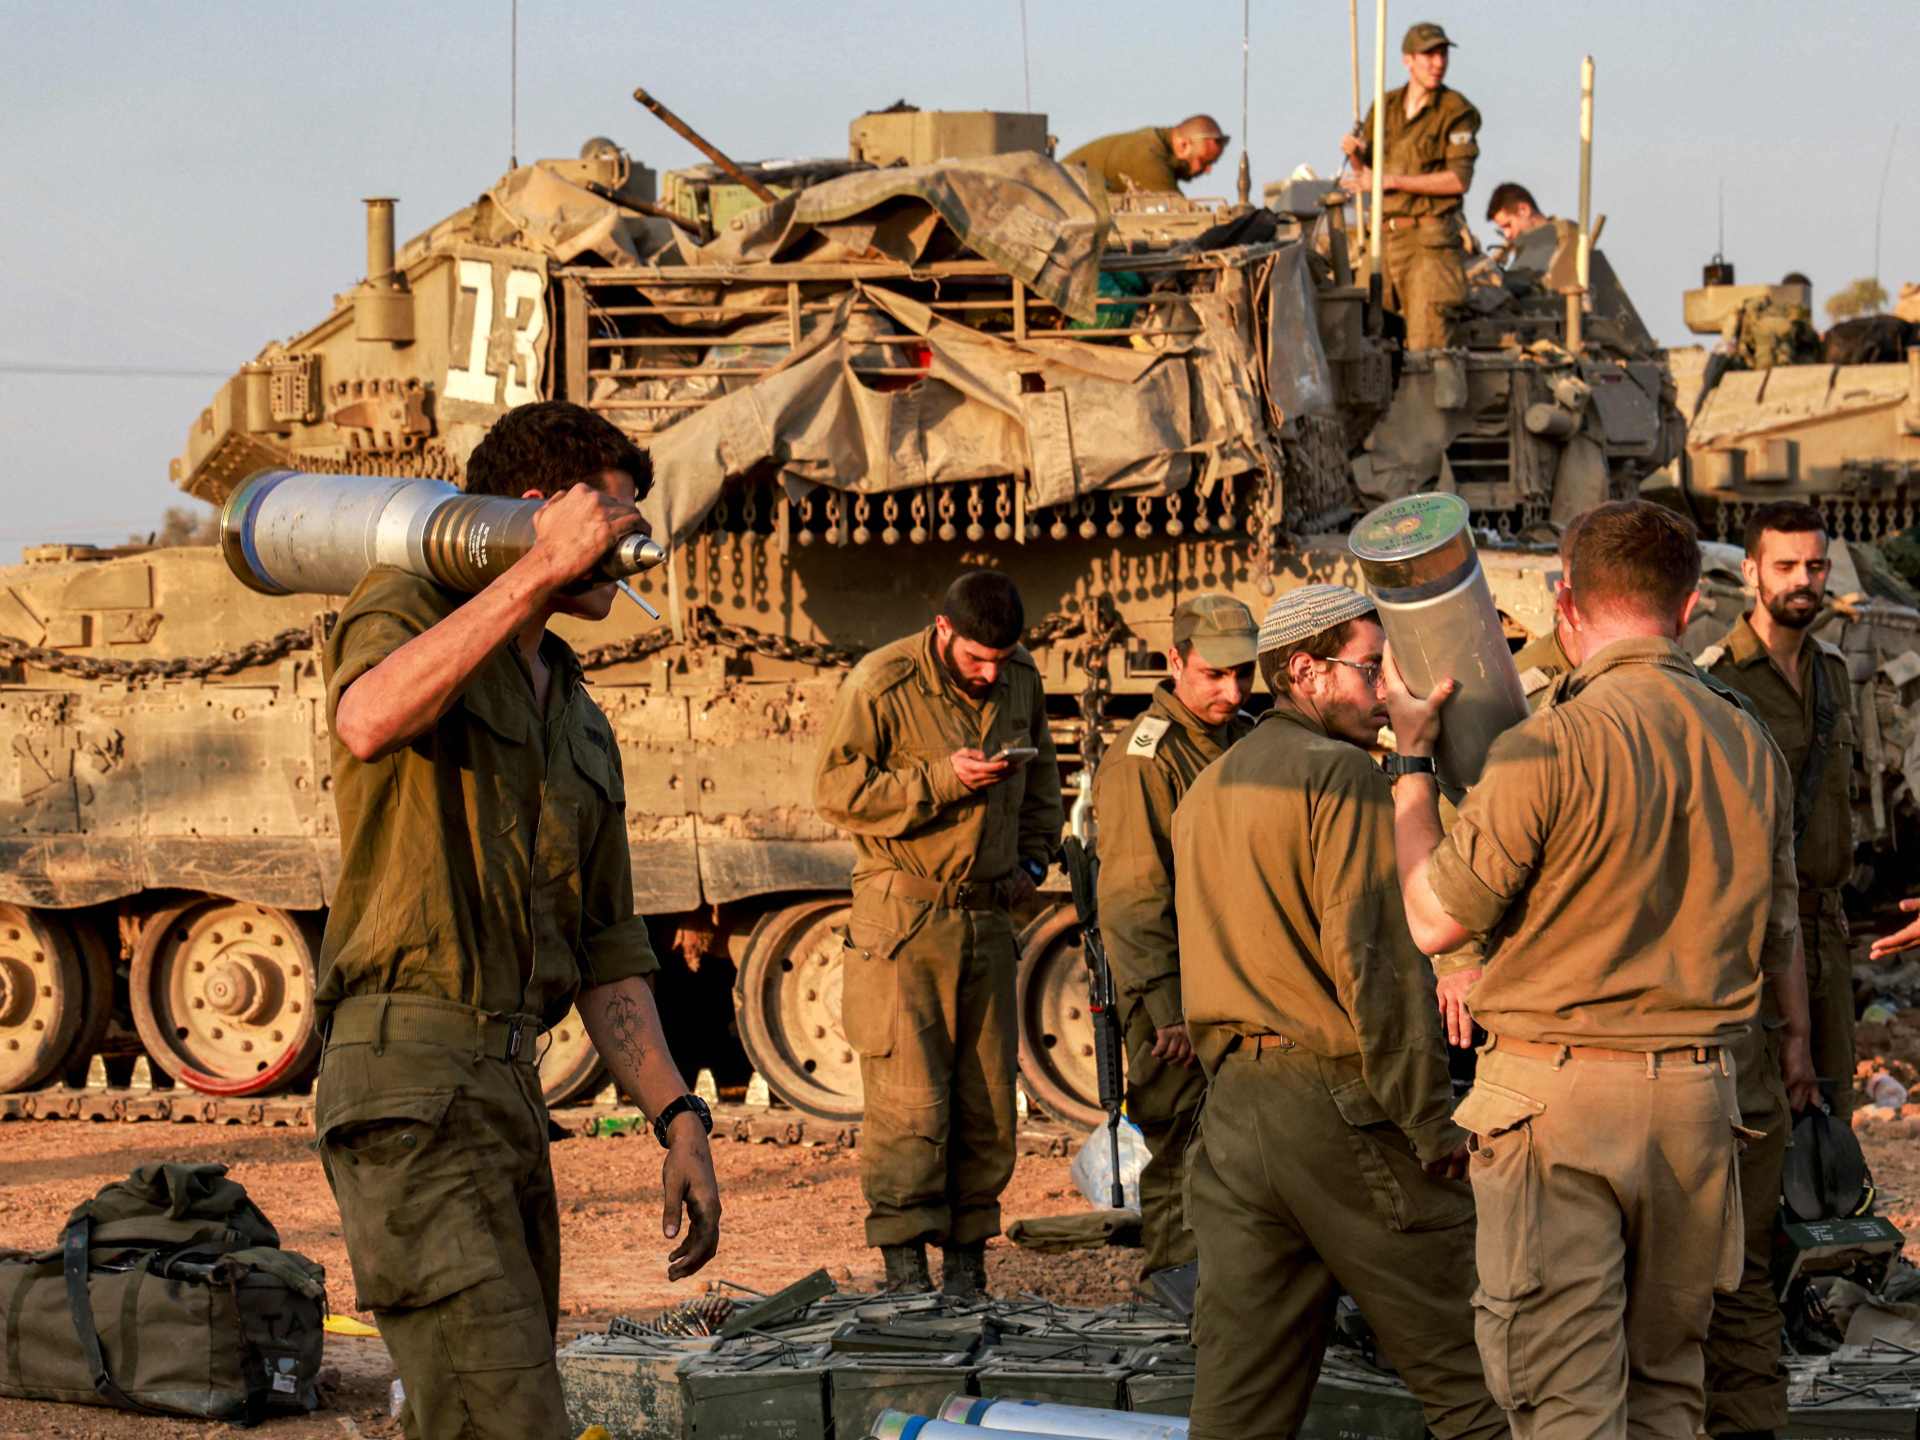 كاتب إسرائيلي يتحدث عن “اليوم التالي للحرب” في غزة | أخبار – البوكس نيوز